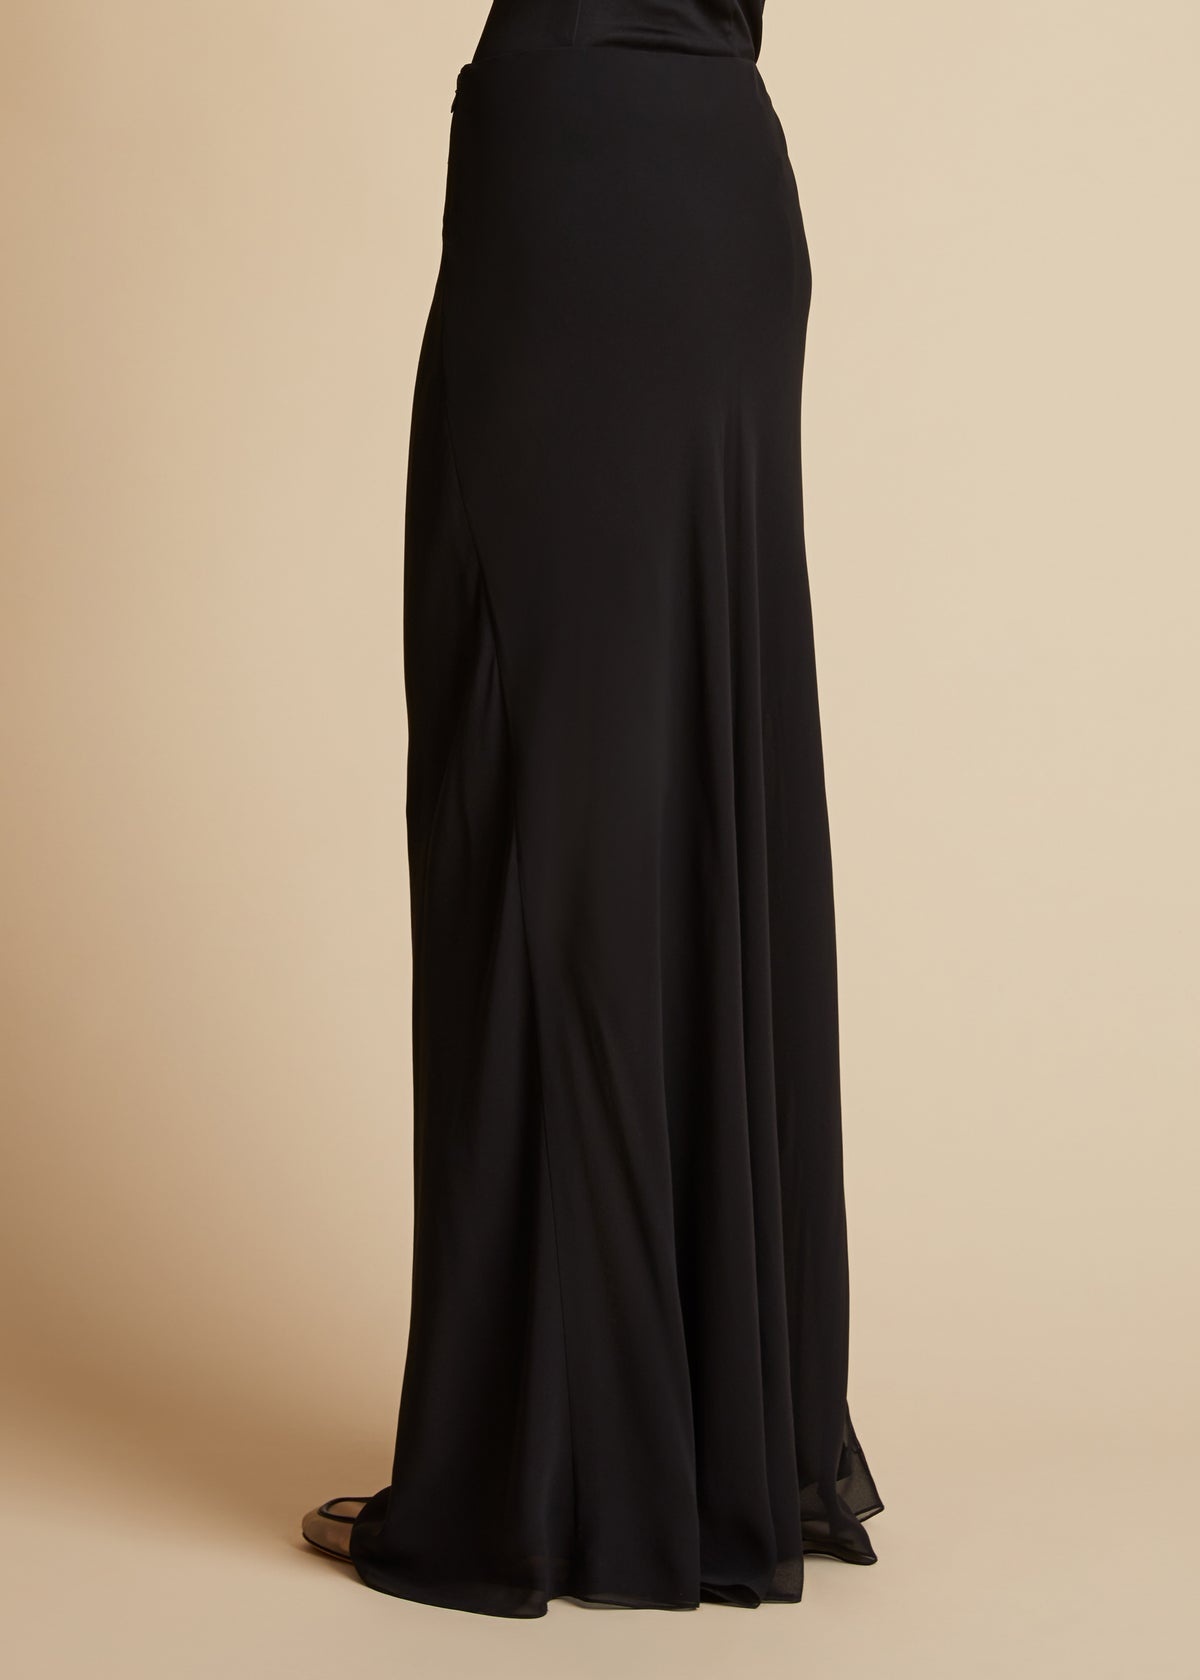 The Mauva Skirt in Black - 3